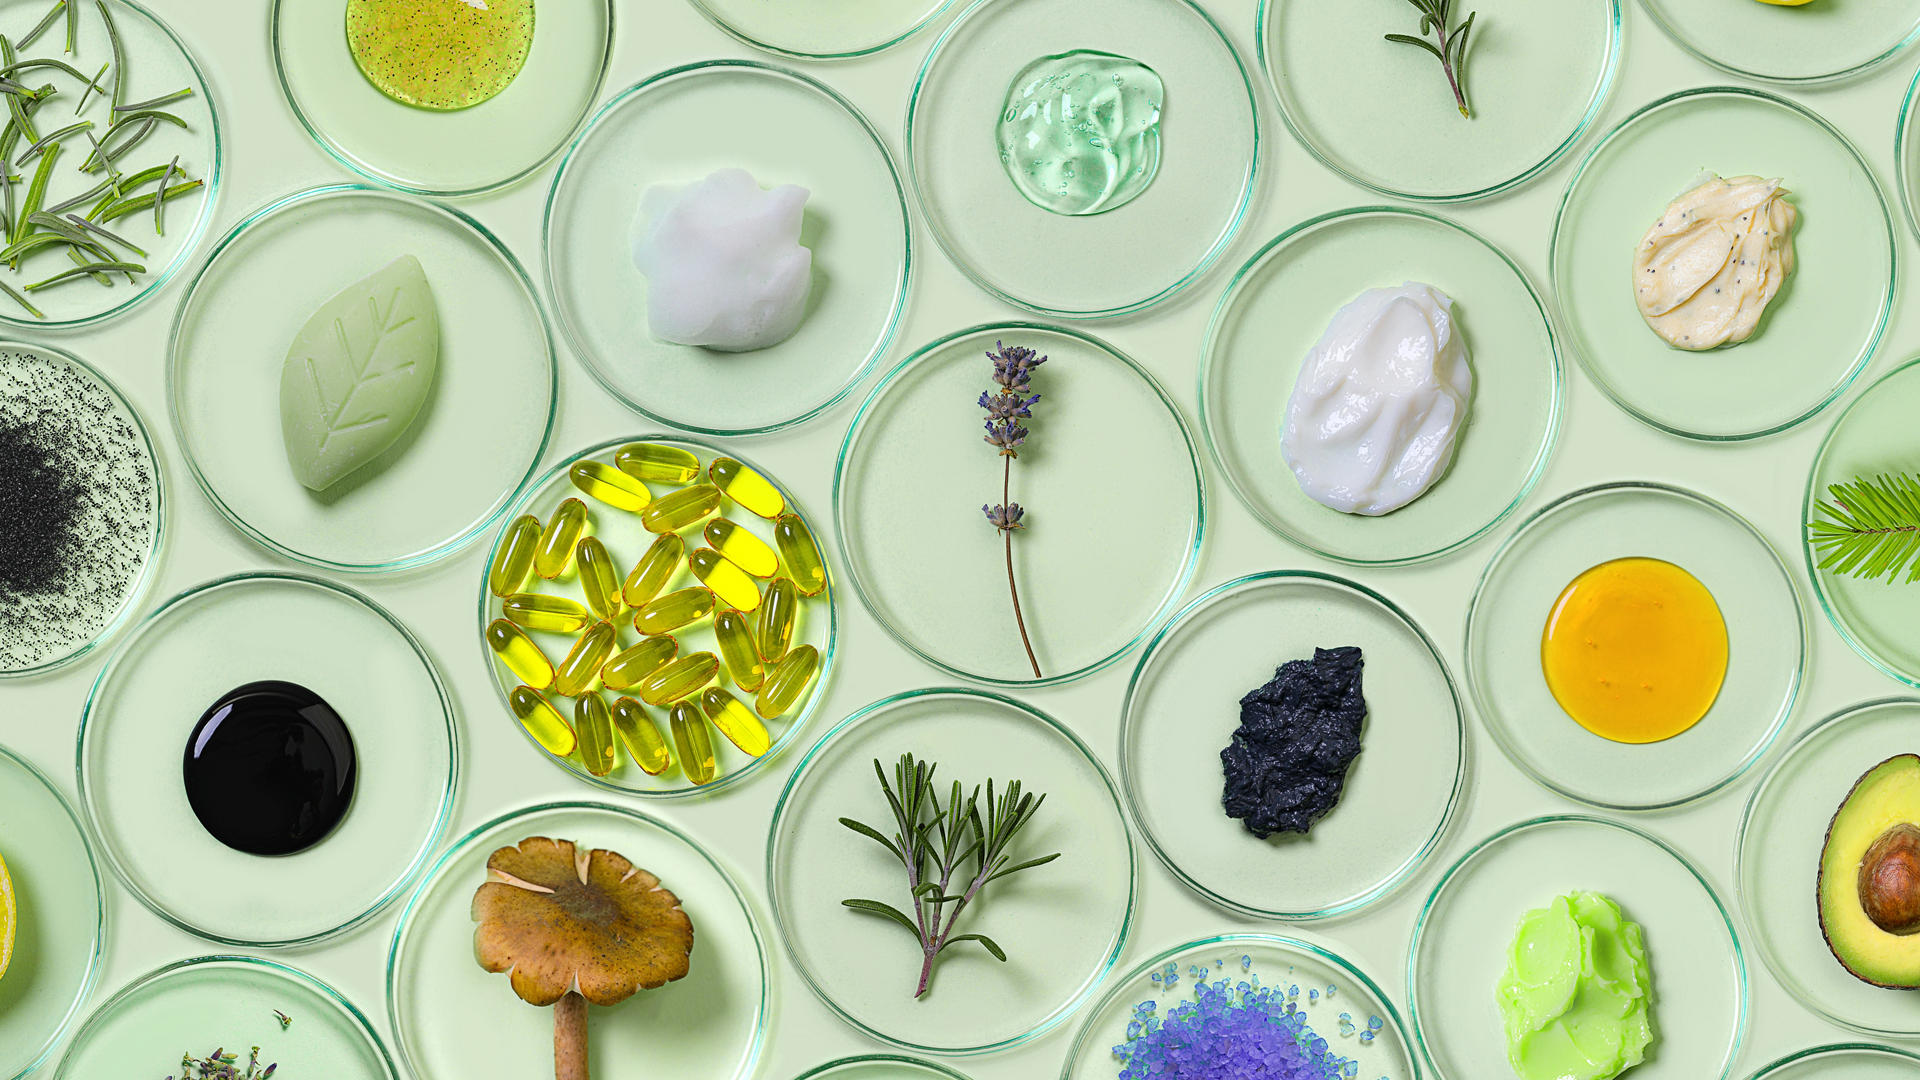 O conceito de produtos de beleza saudáveis, como os orgânicos e biocosméticos com placas de Petri com plantas naturais